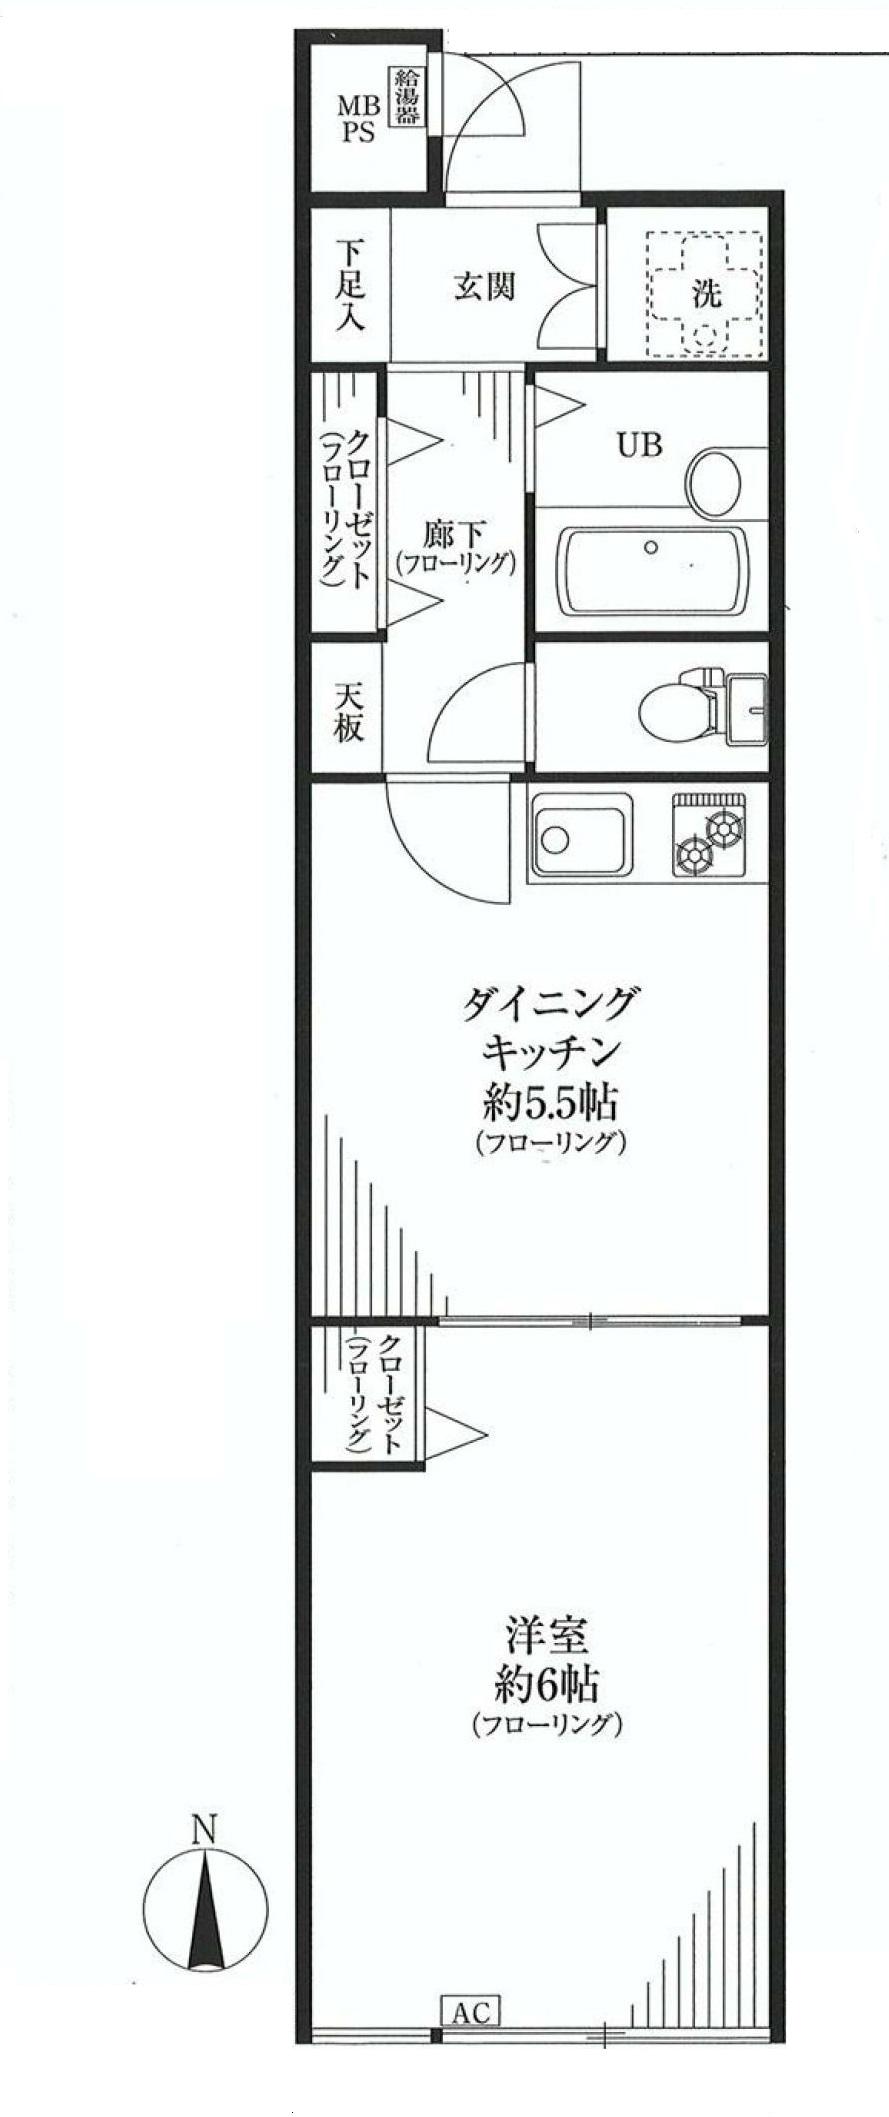 Floor plan. 1DK, Price 15.8 million yen, Occupied area 32.91 sq m